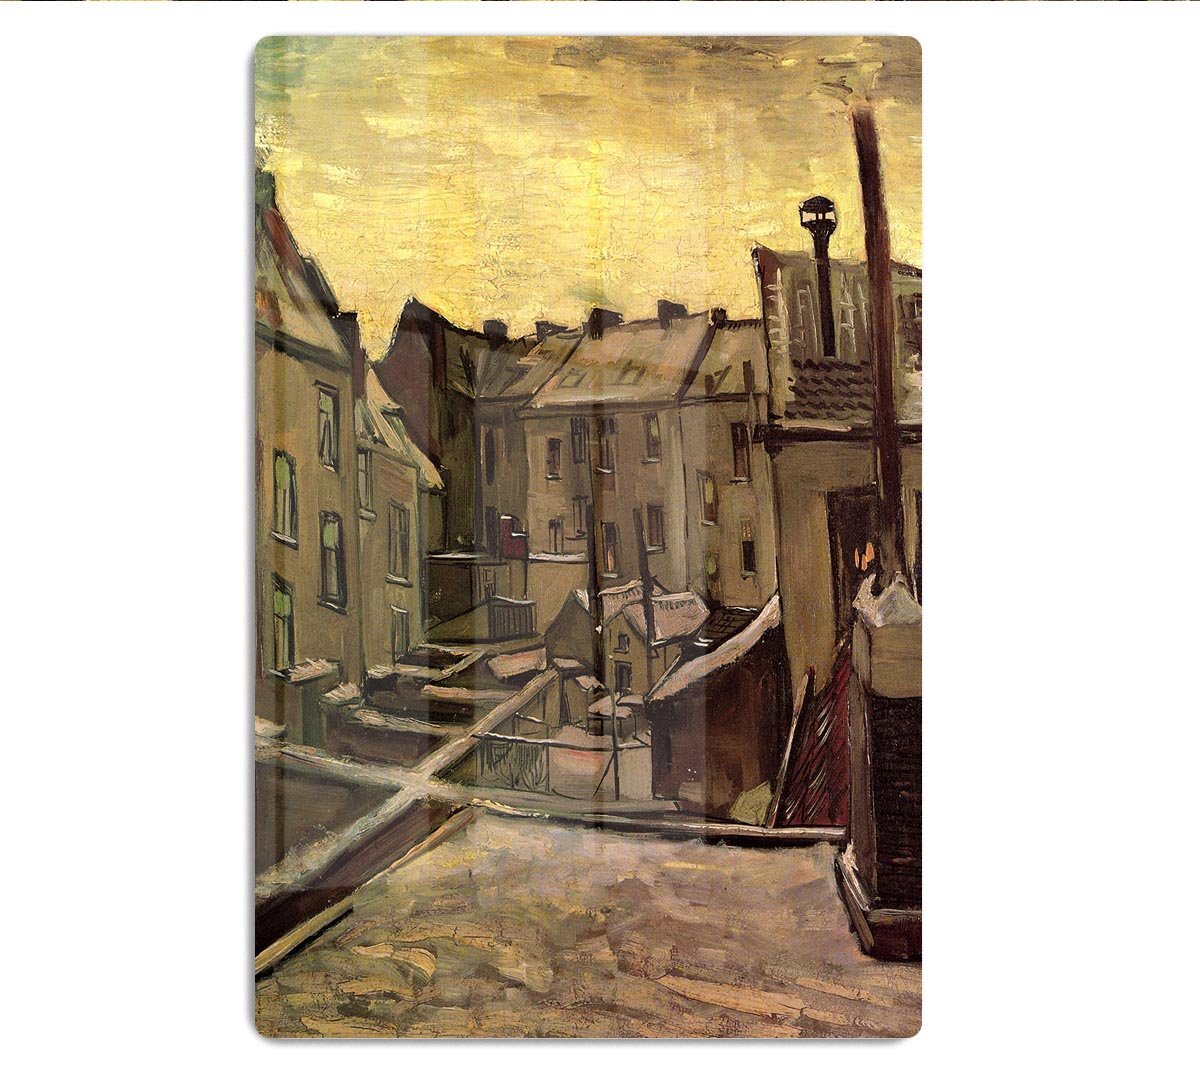 Backyards of Old Houses in Antwerp in the Snow by Van Gogh HD Metal Print